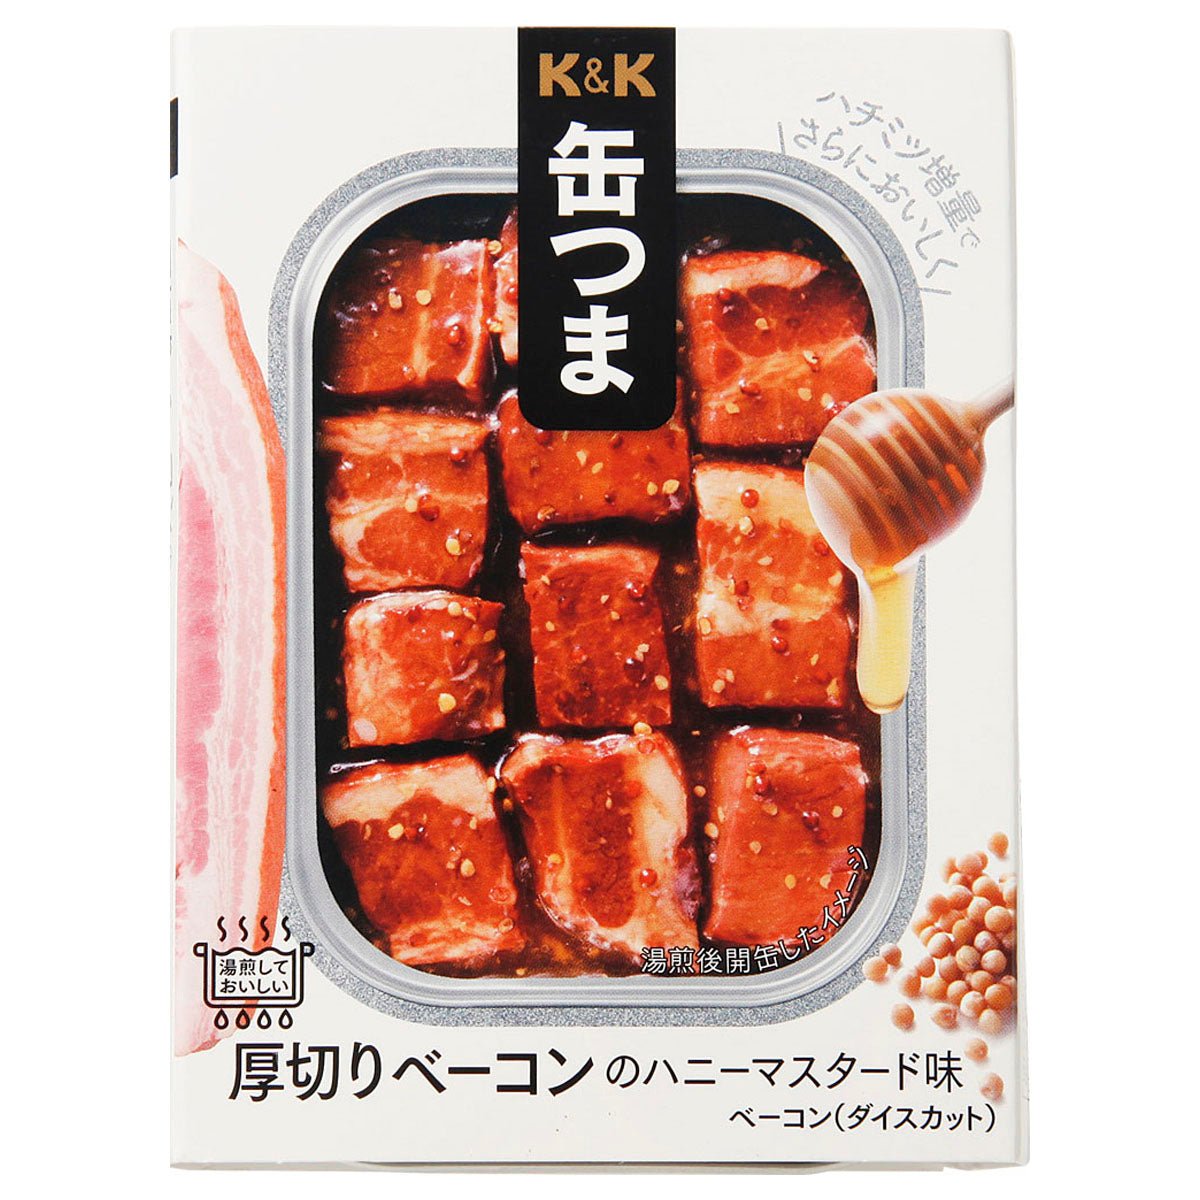 K & K 캔 두꺼운 얇게 썬 베이컨 꿀 겨자 맛